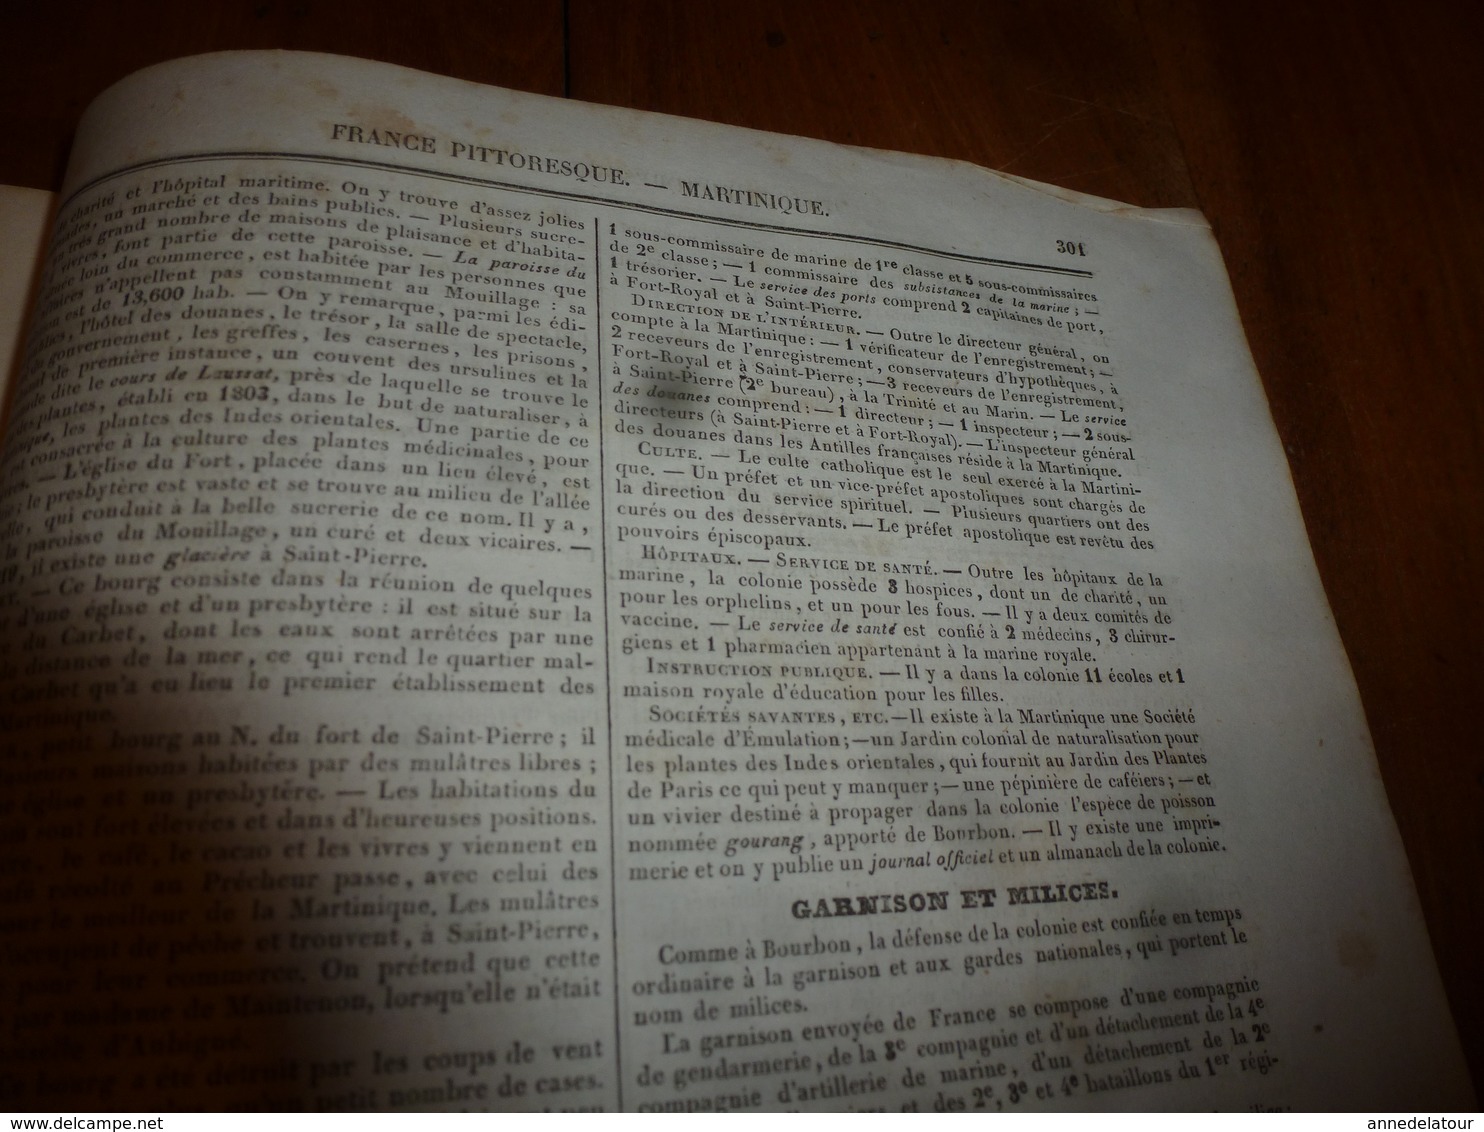 1935 FRANCE PITTORESQUE (Martinique, ) Histoire-Les planteurs et les esclaves-Colons-Gravure St-Pierre-Garnison- -etc